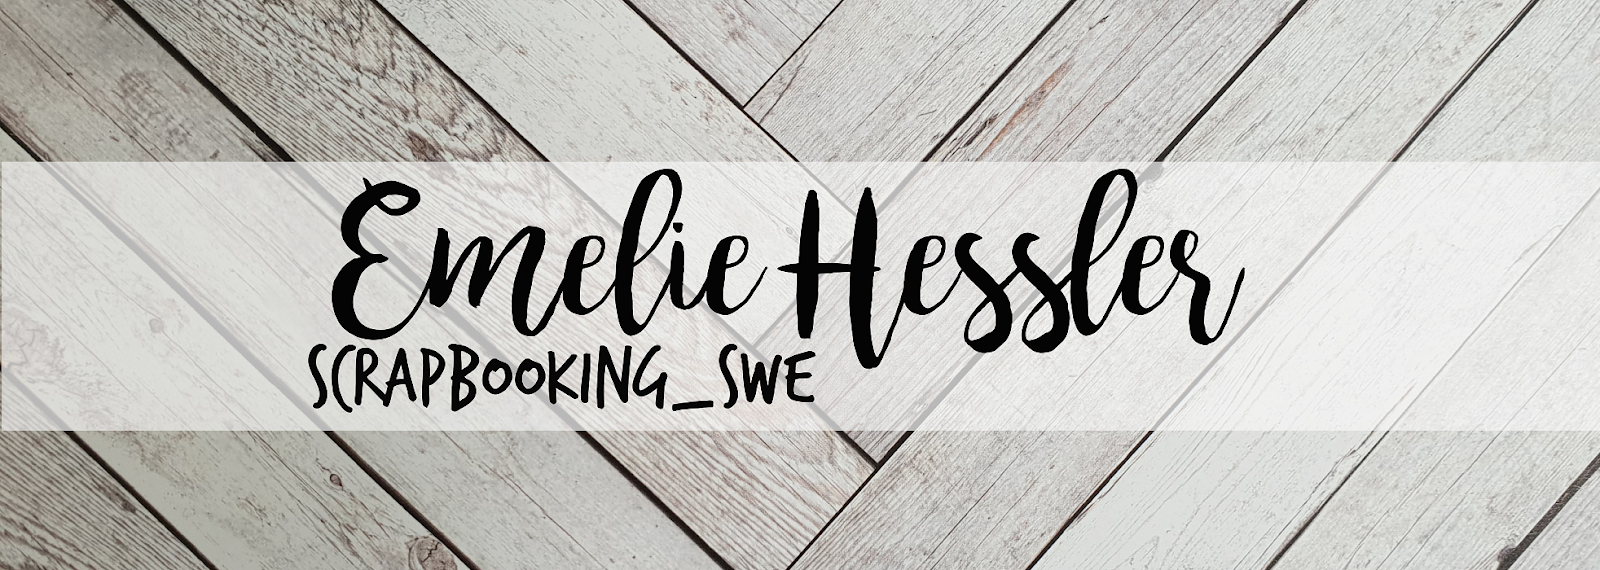 Emelie Hessler Scrapbooking_swe